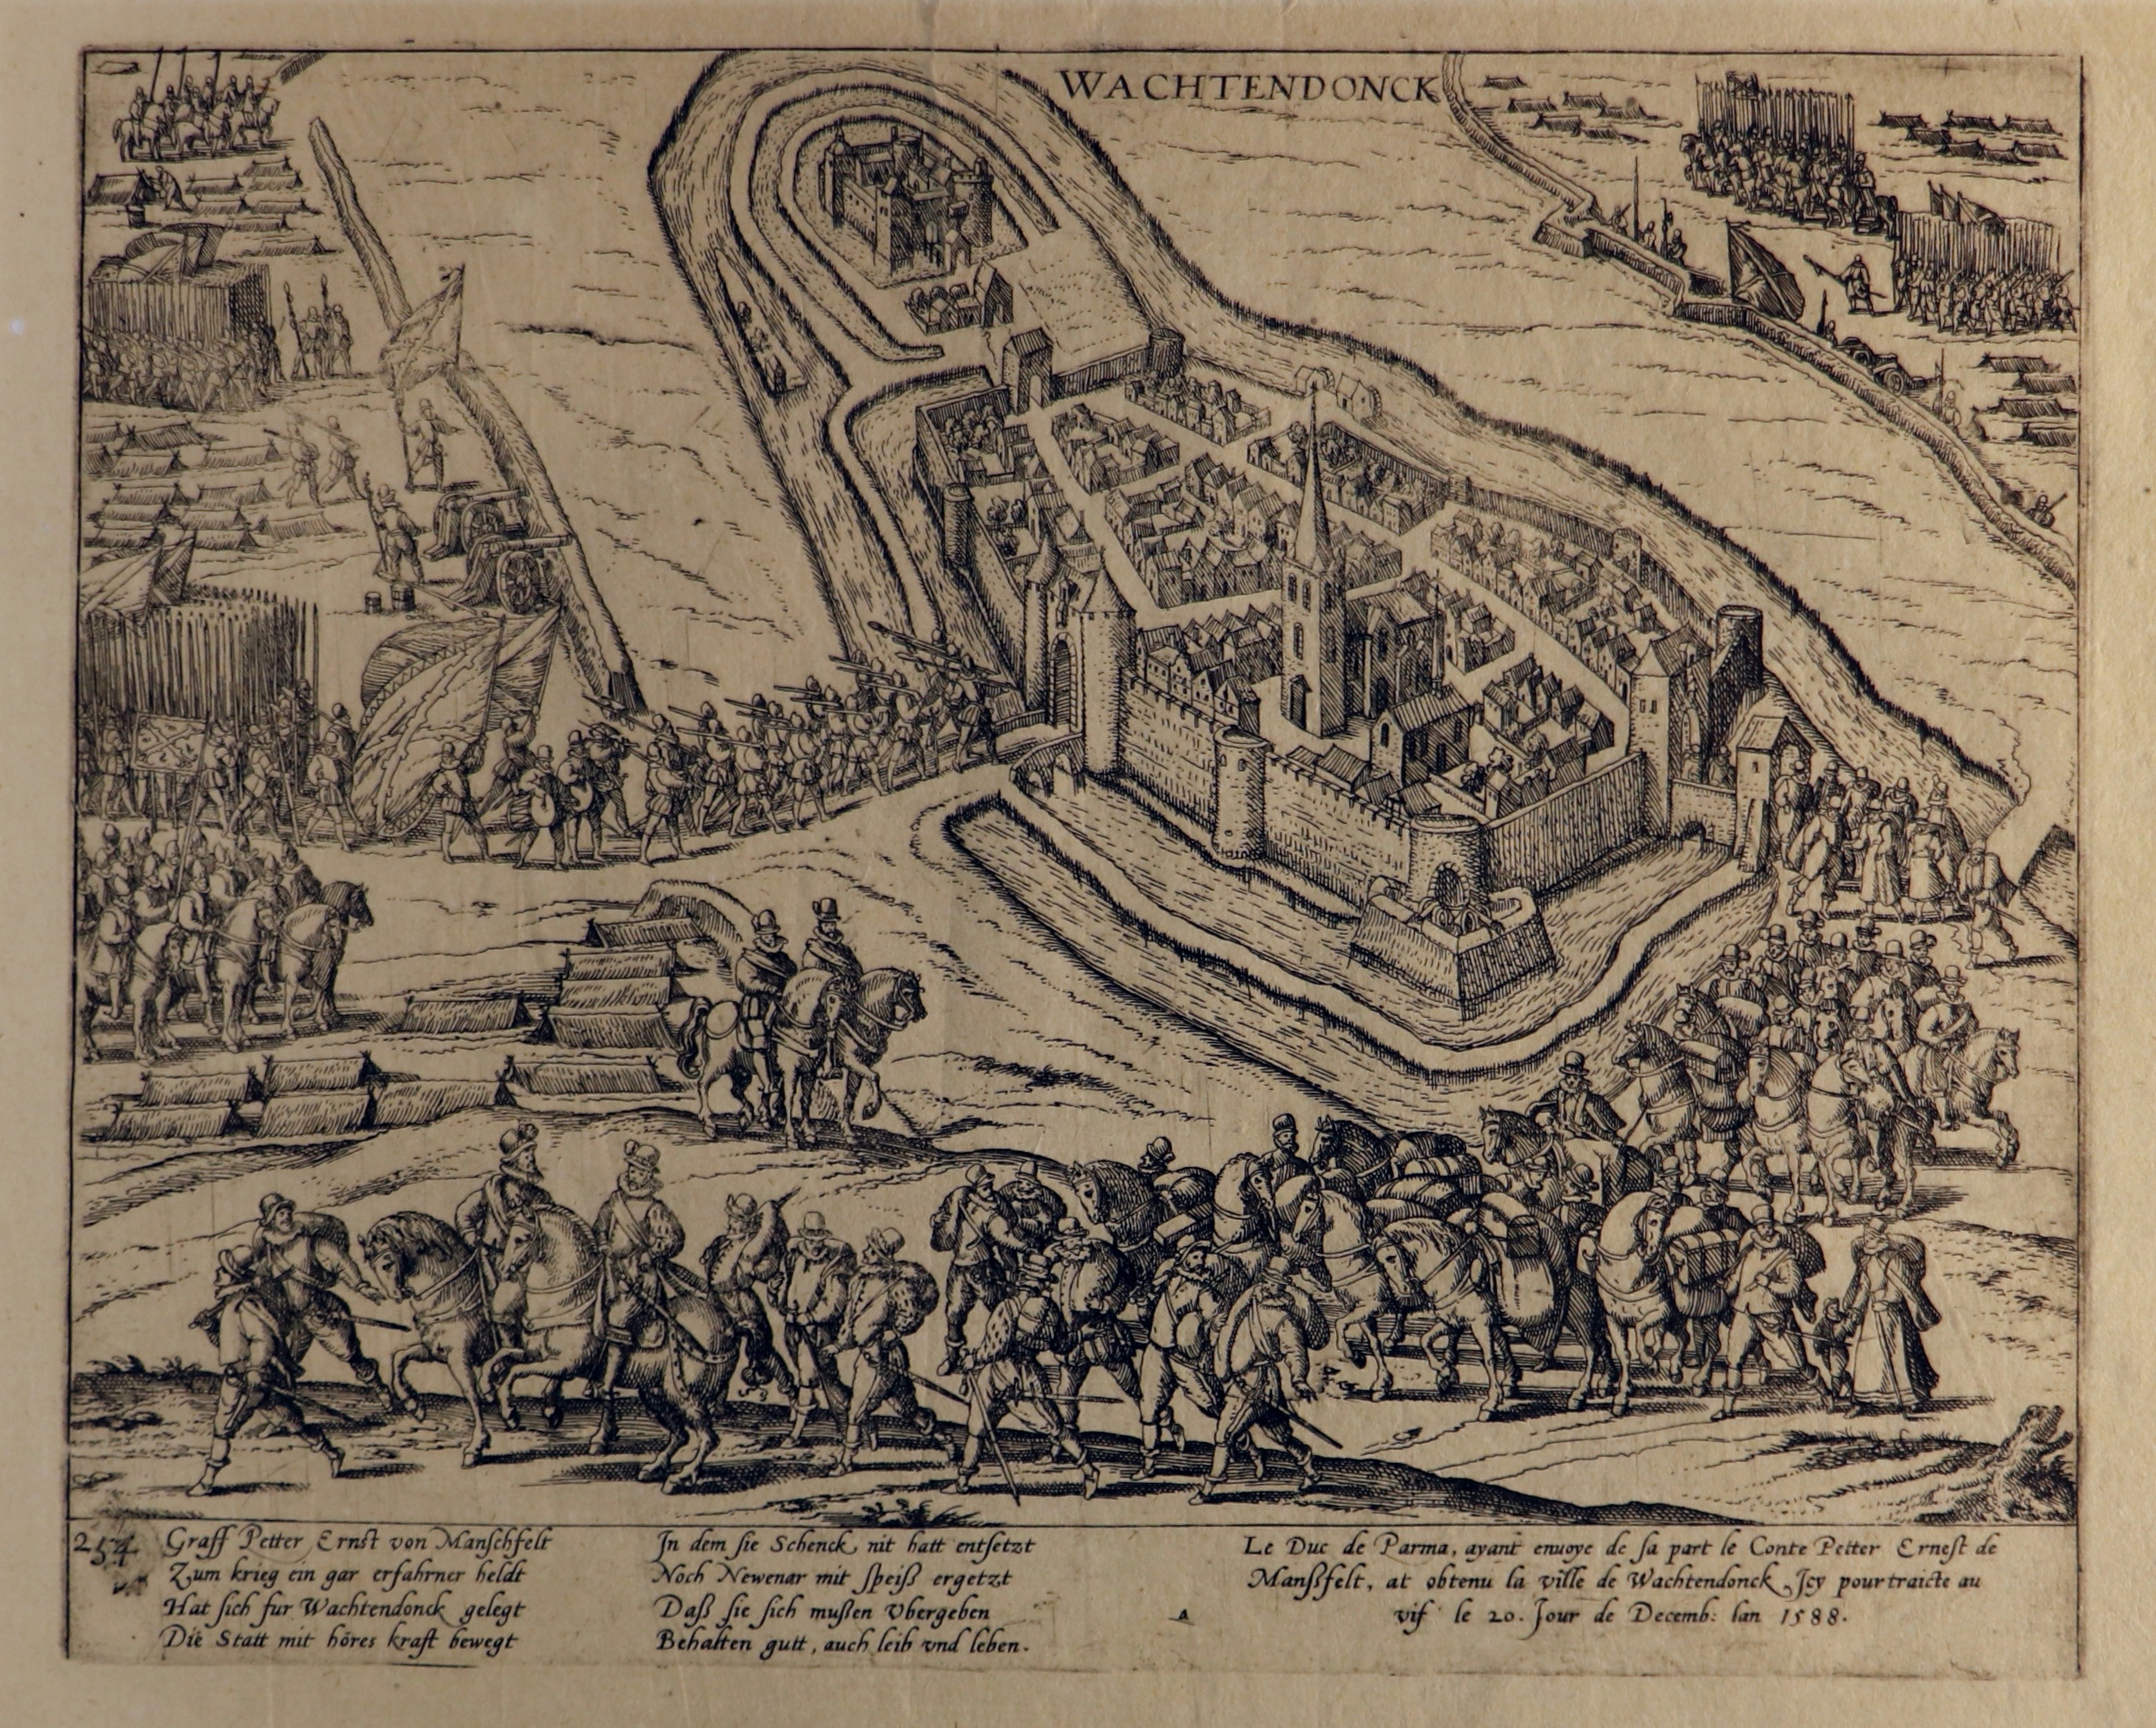 Kupferstich zur Eroberung von Wachtendonk durch den Grafen Mansfeld, 20. Dezember 1588 (Hogenberg) (Städtisches Museum Schloss Rheydt CC BY)